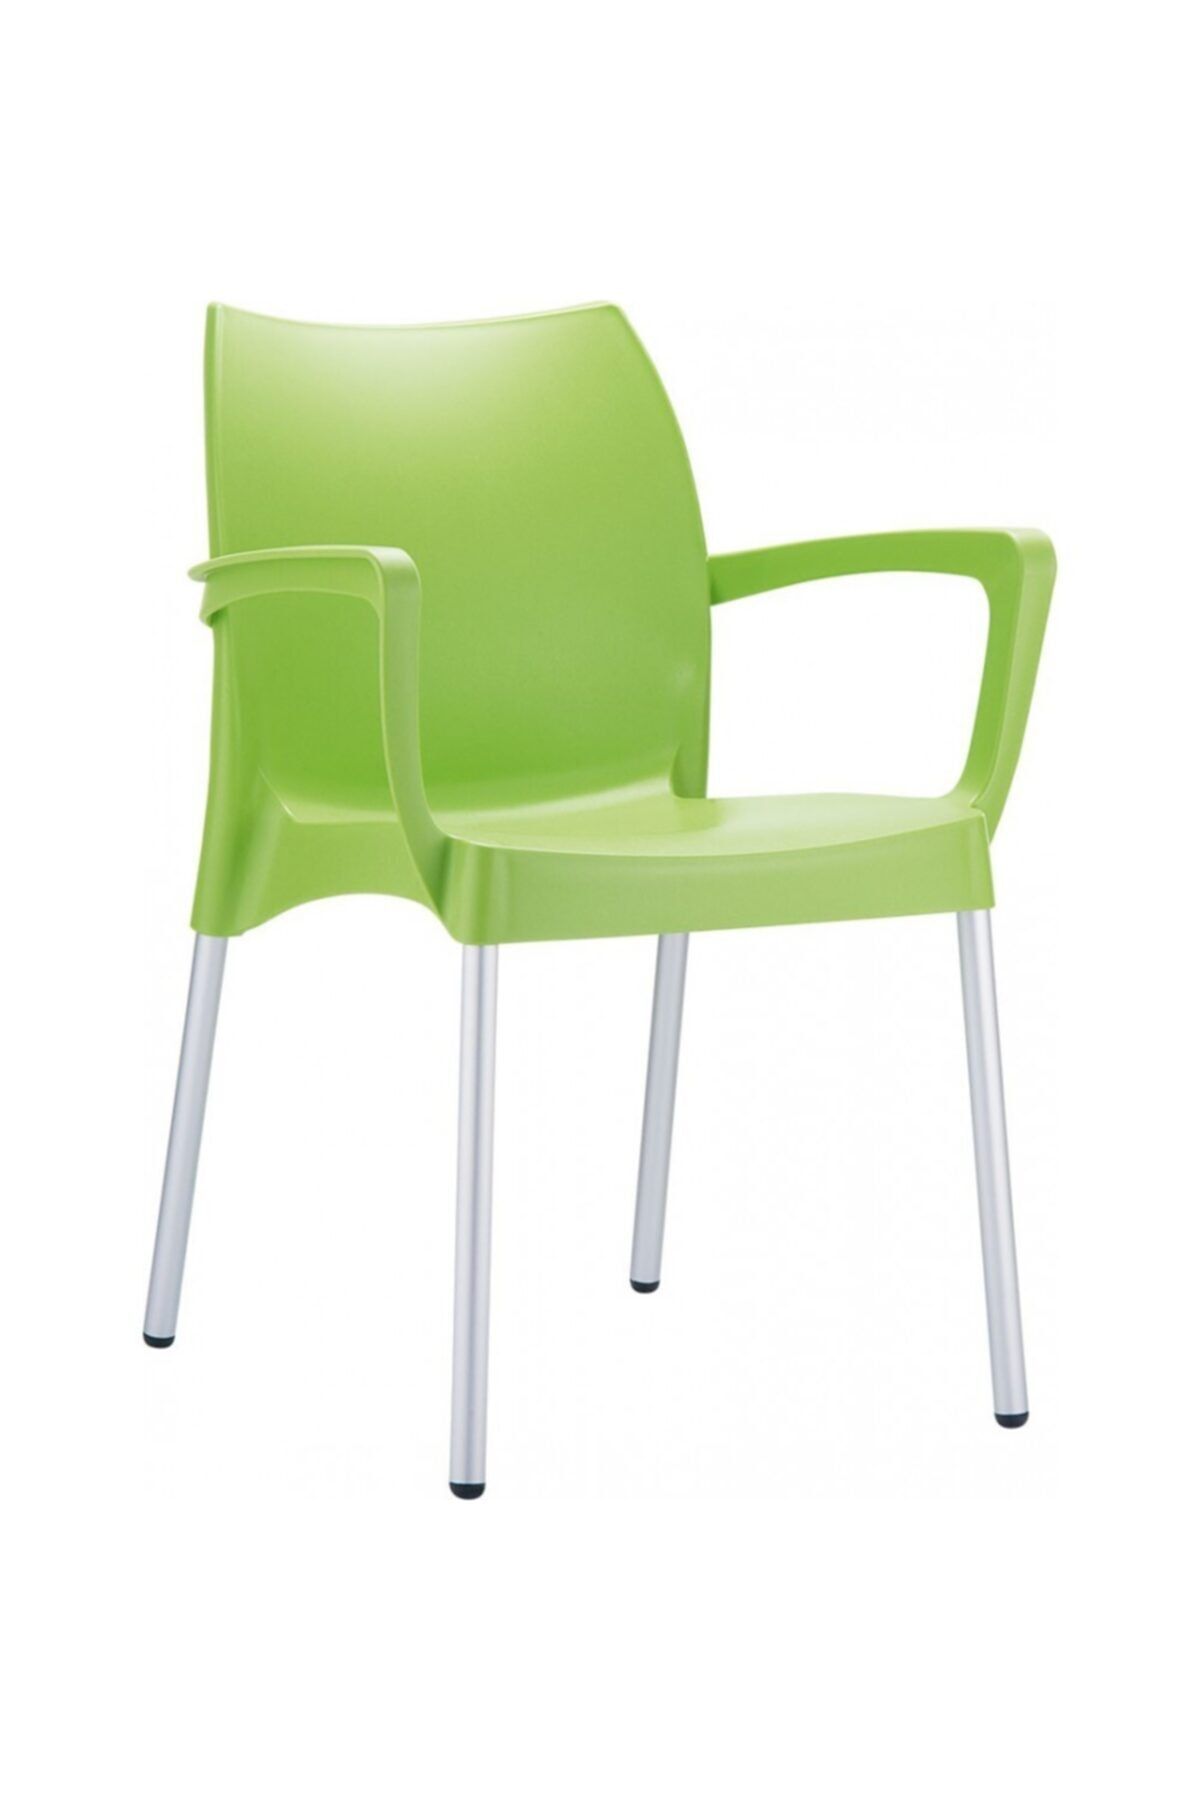 Siesta Dolce Sandalye Fıstık Yeşili